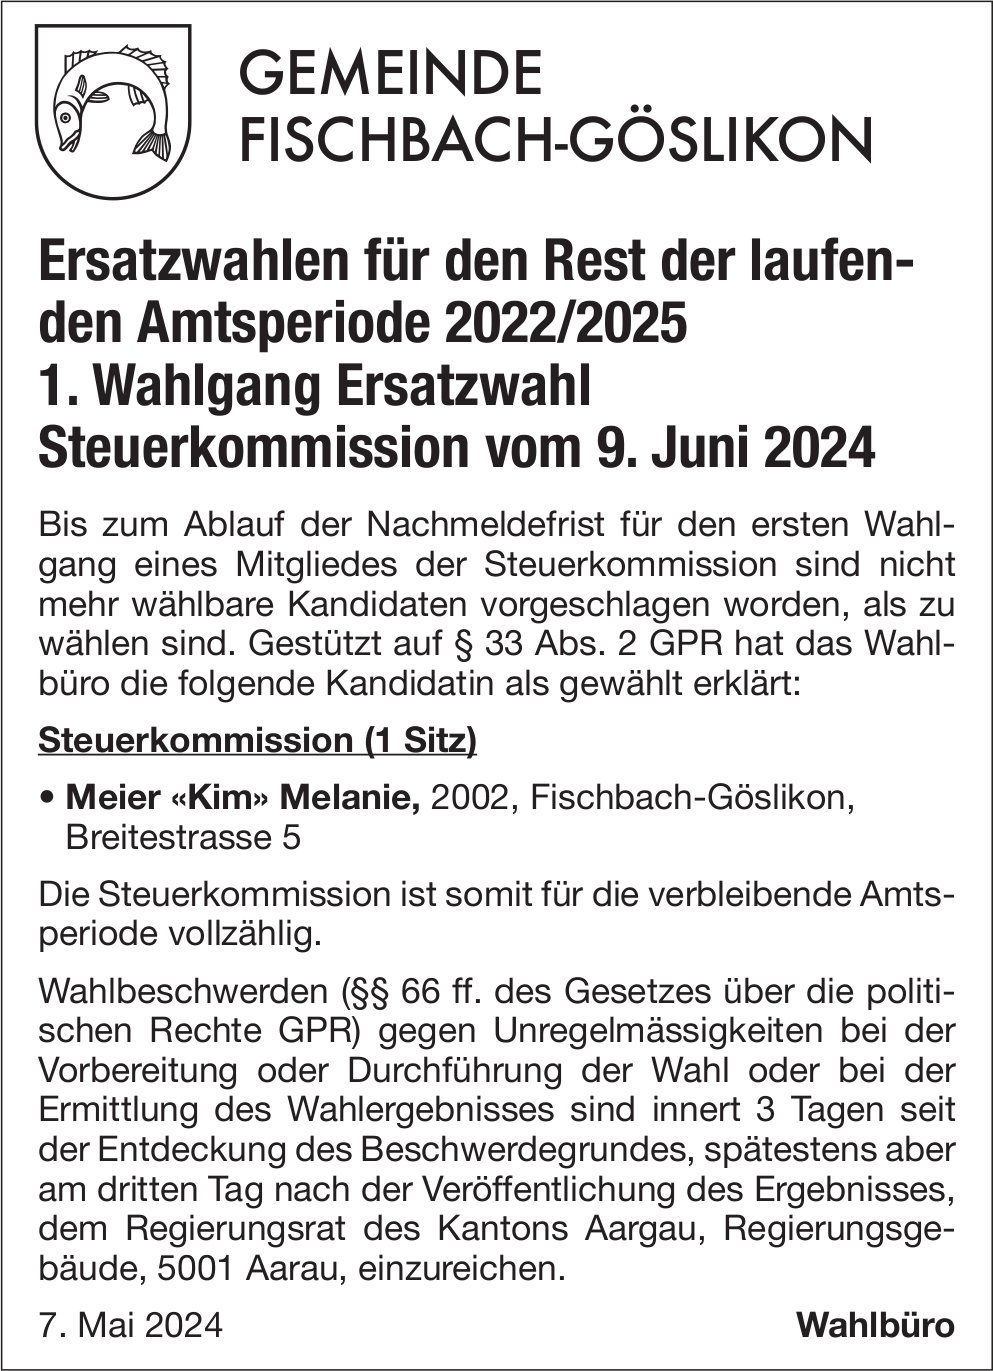 Fischbach-Göslikon - Ersatzwahlen für den Rest der laufenden Amtsperiode